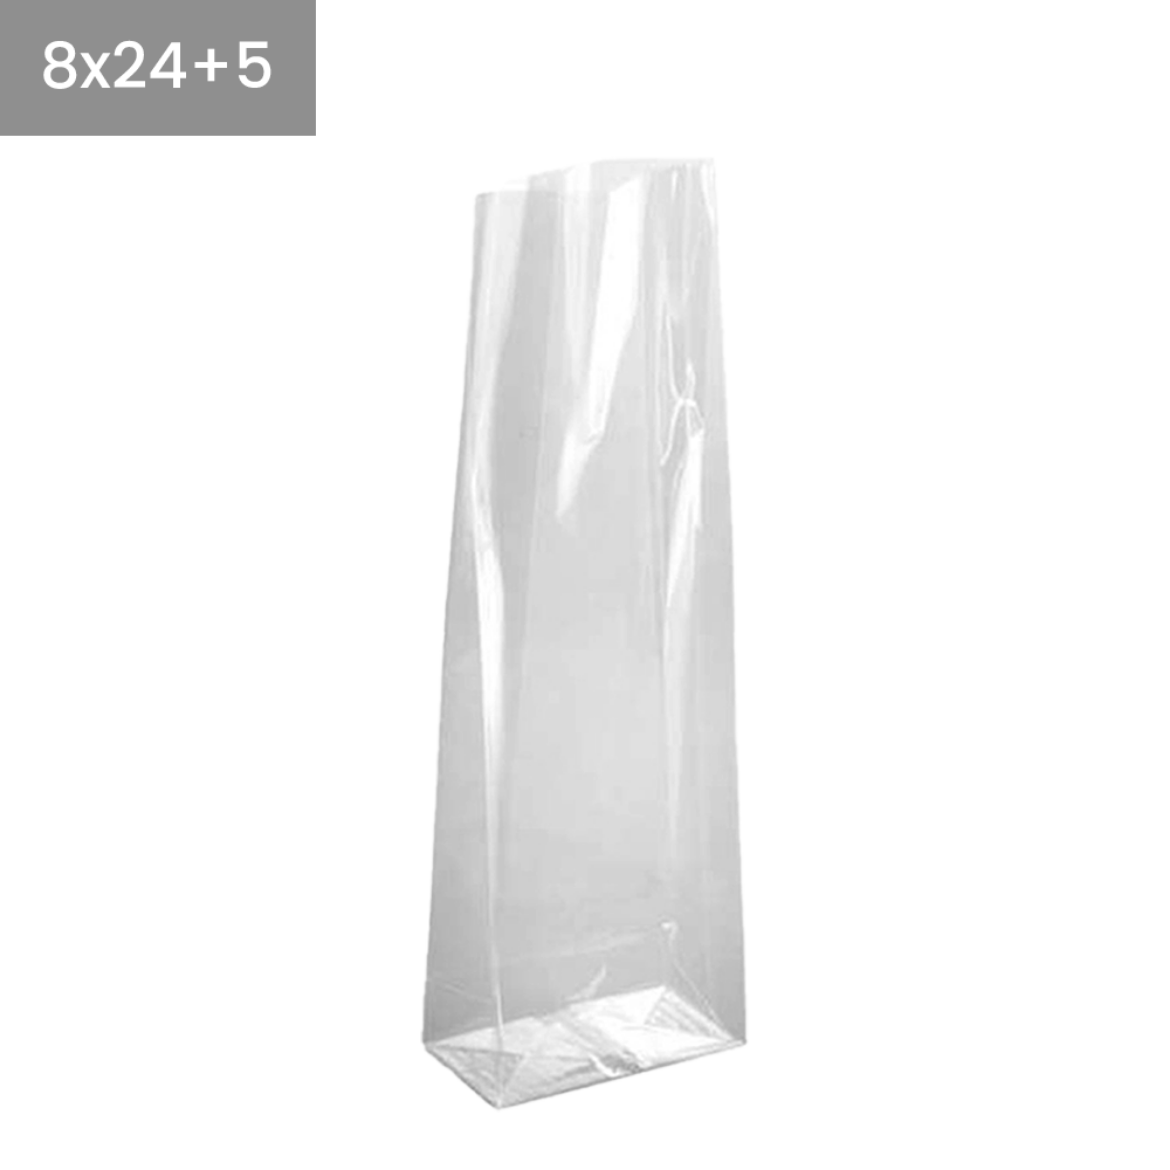 Bolsas de plástico transparentes base cuadrada 8x24+5